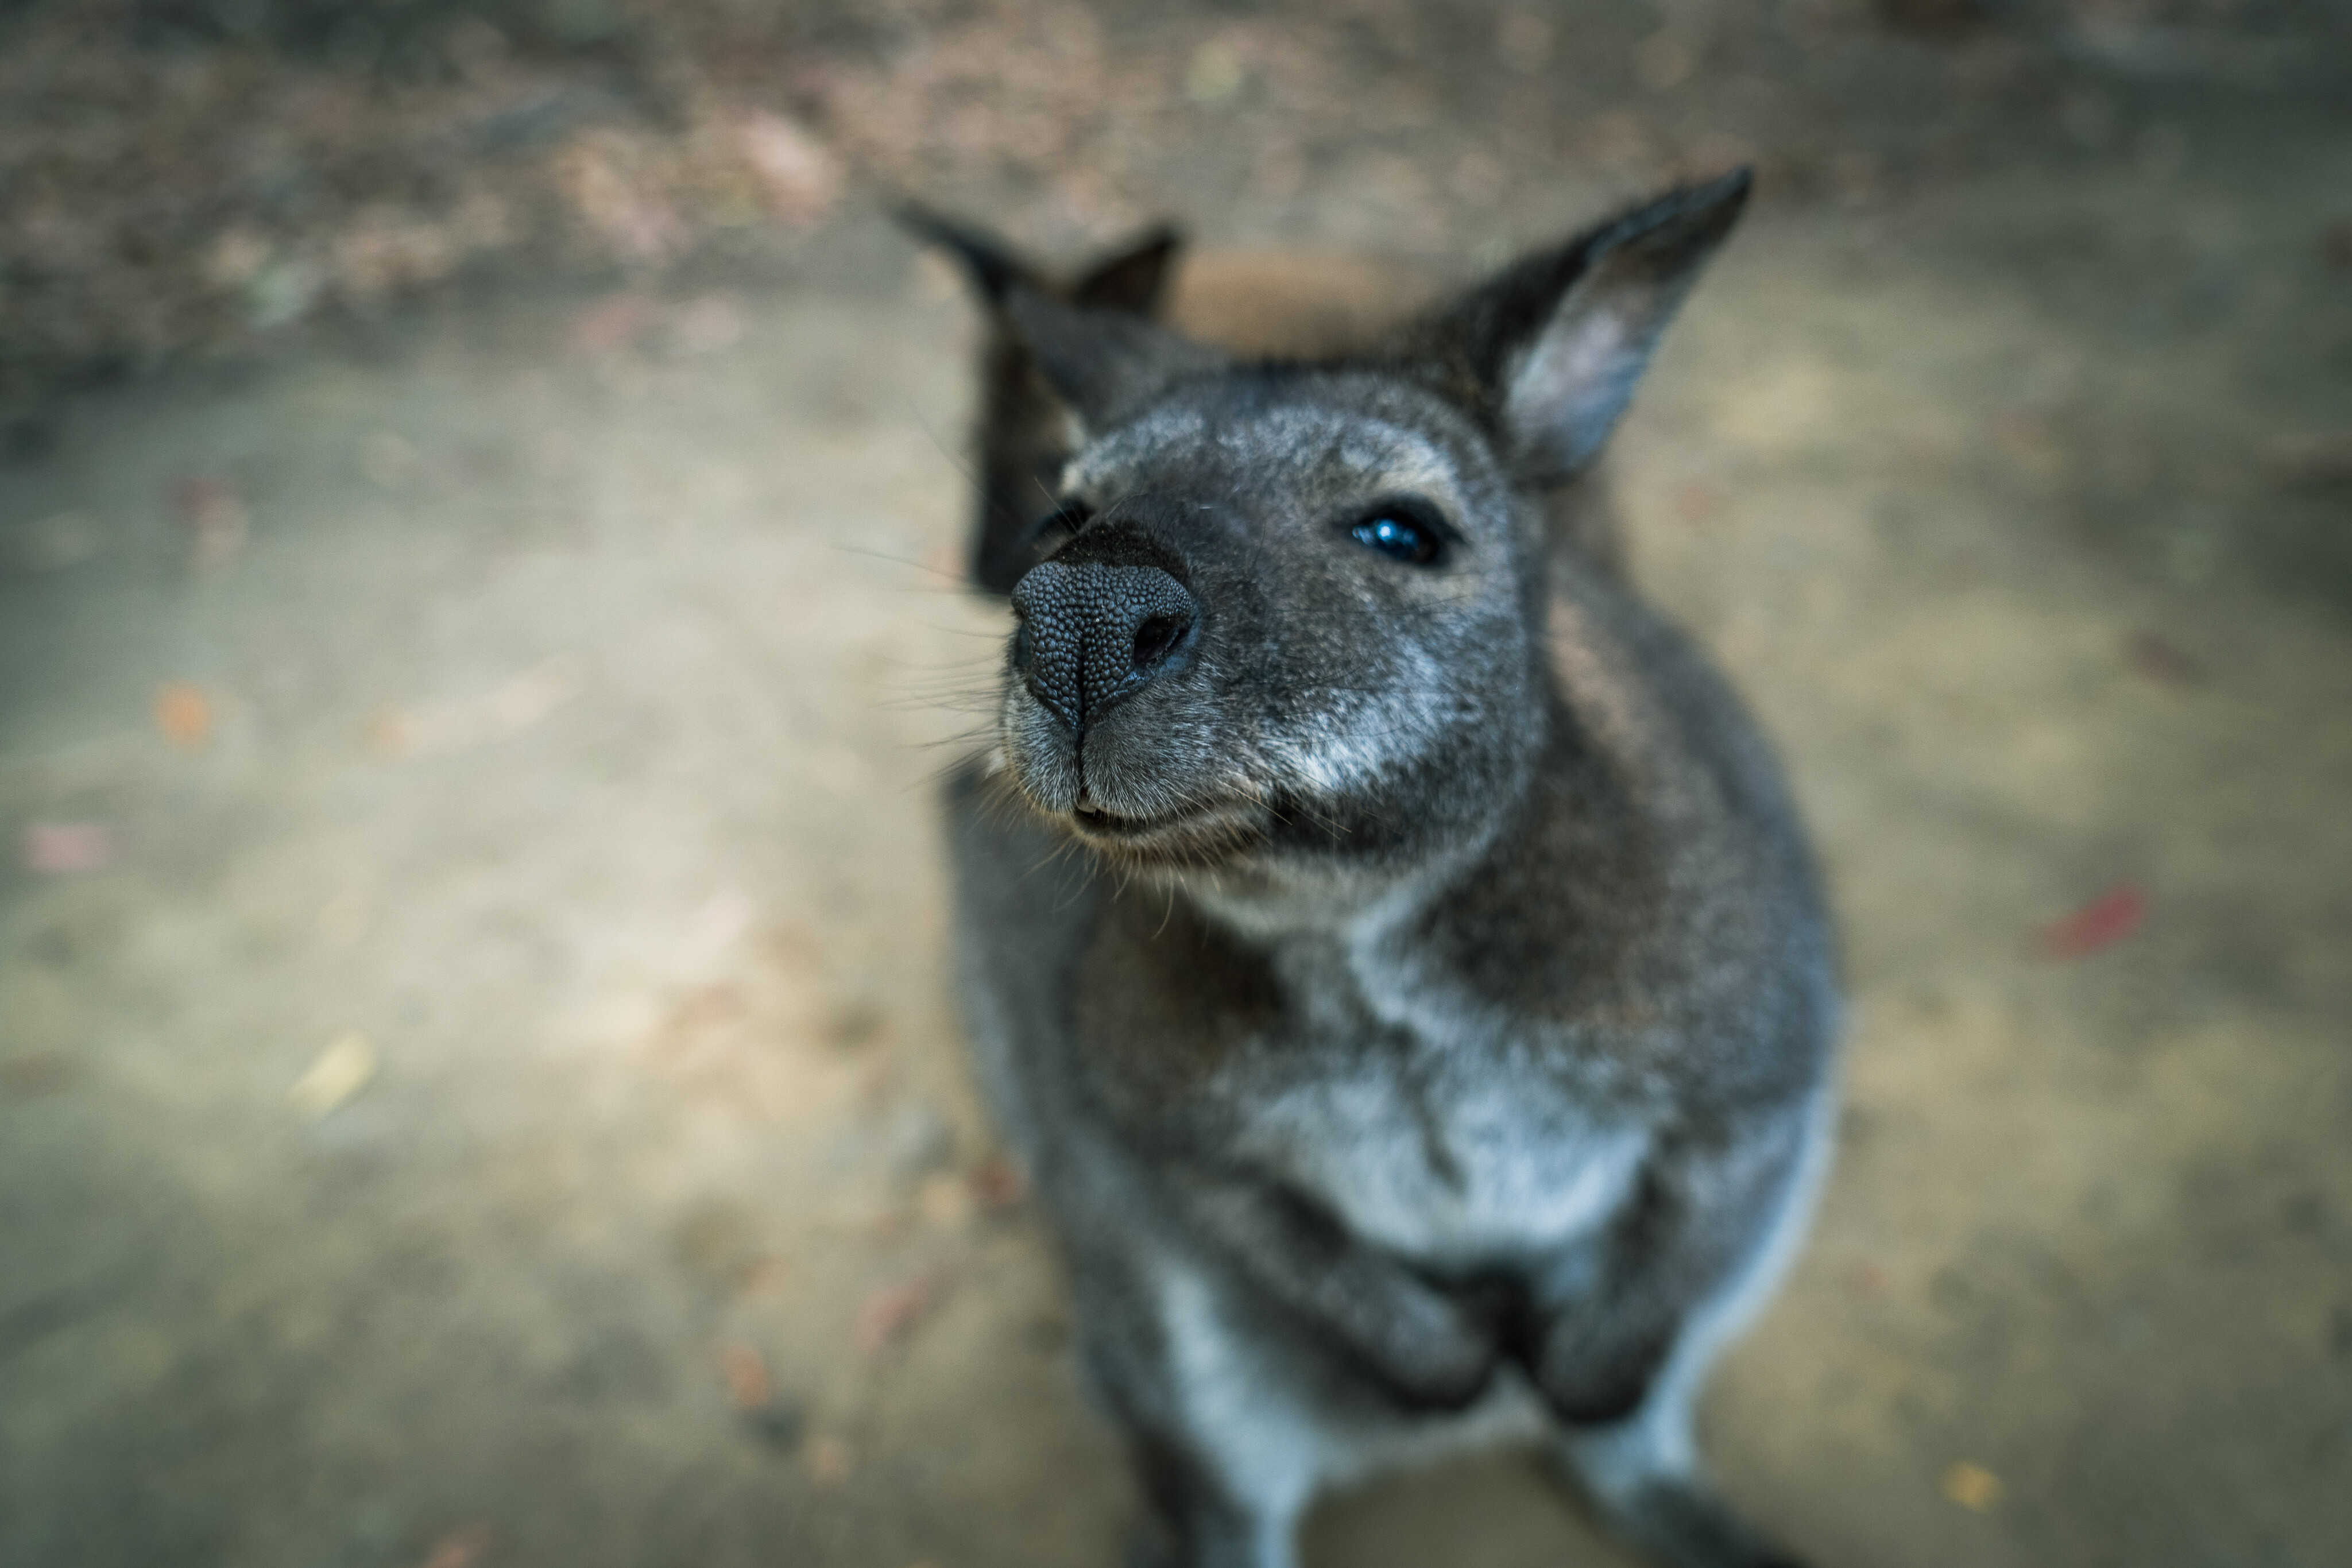 efee1d3f/animal kangaroo curious 4x4 australia explore tasmania jpg